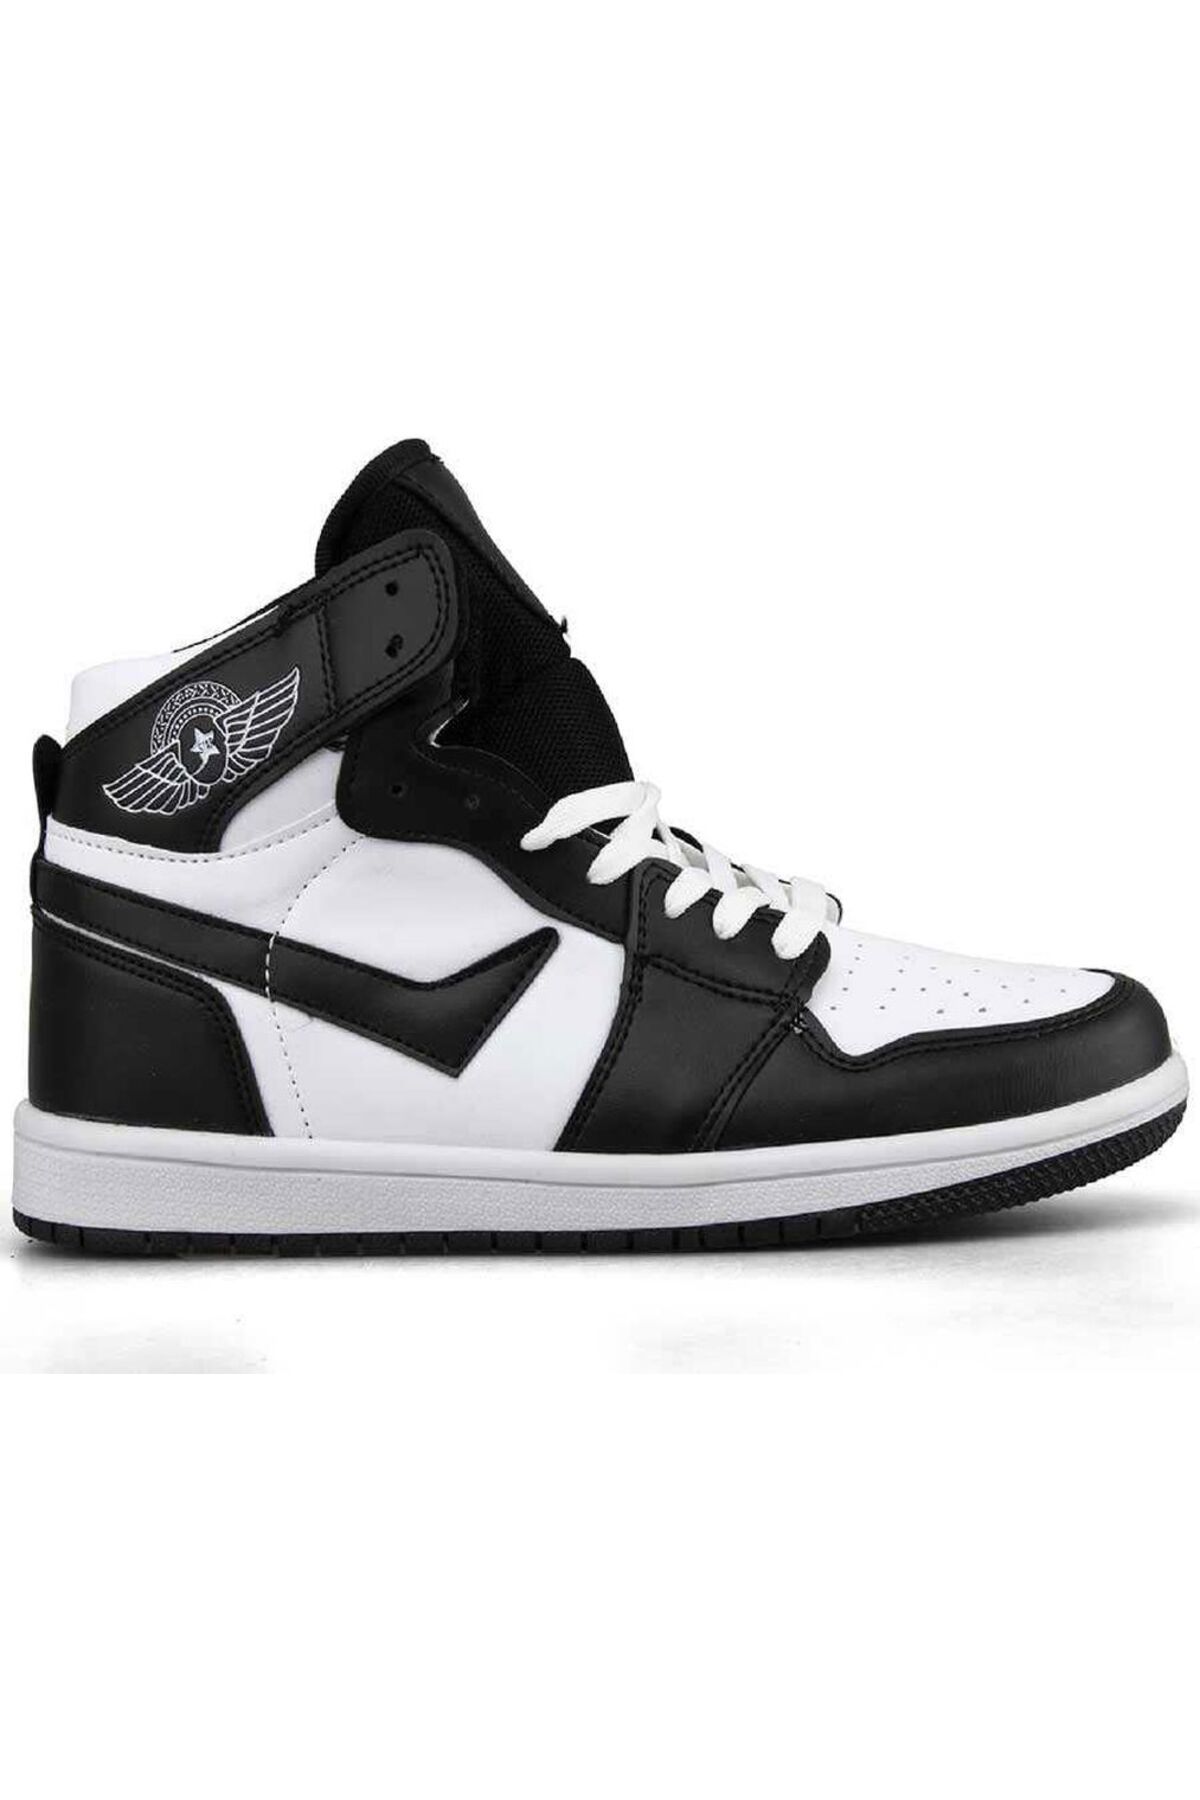 orkistore Unisex Beyaz Siyah Bilekli Spor Ayakkabı